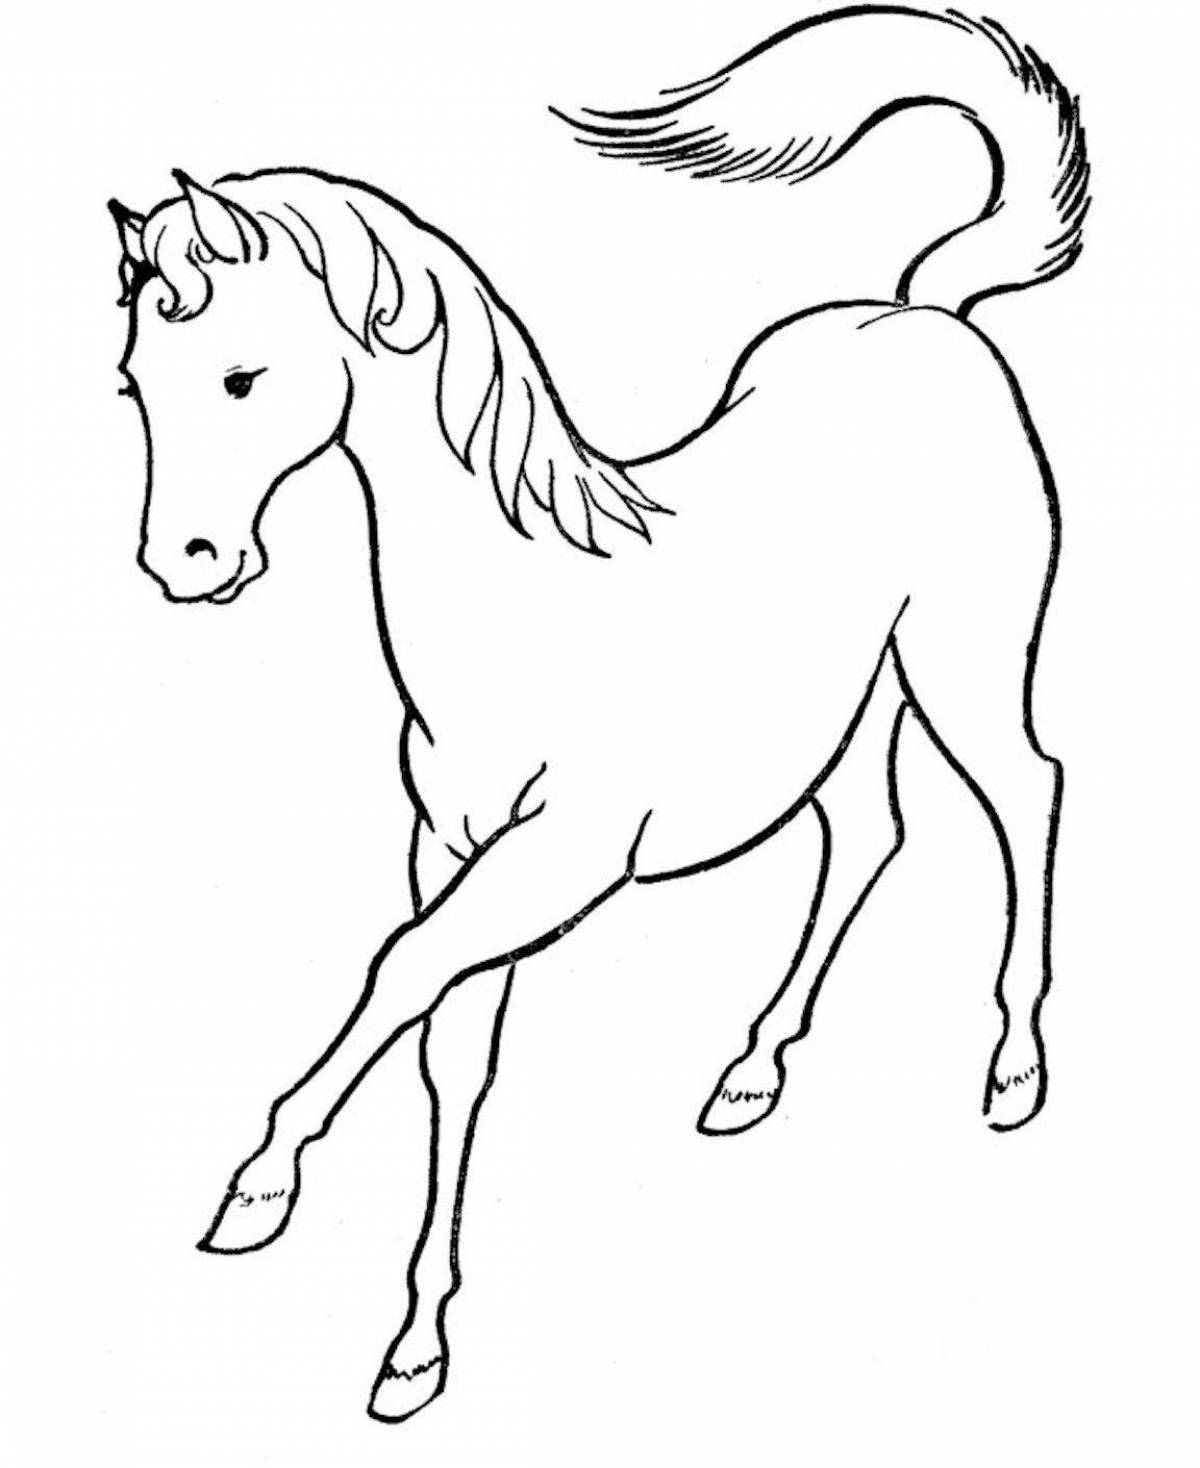 Раскрасить лошадку. Раскраска. Лошадка. Лошадка раскраска для детей. Рисунок лошади для раскрашивания. Лошадь раскраска для детей.